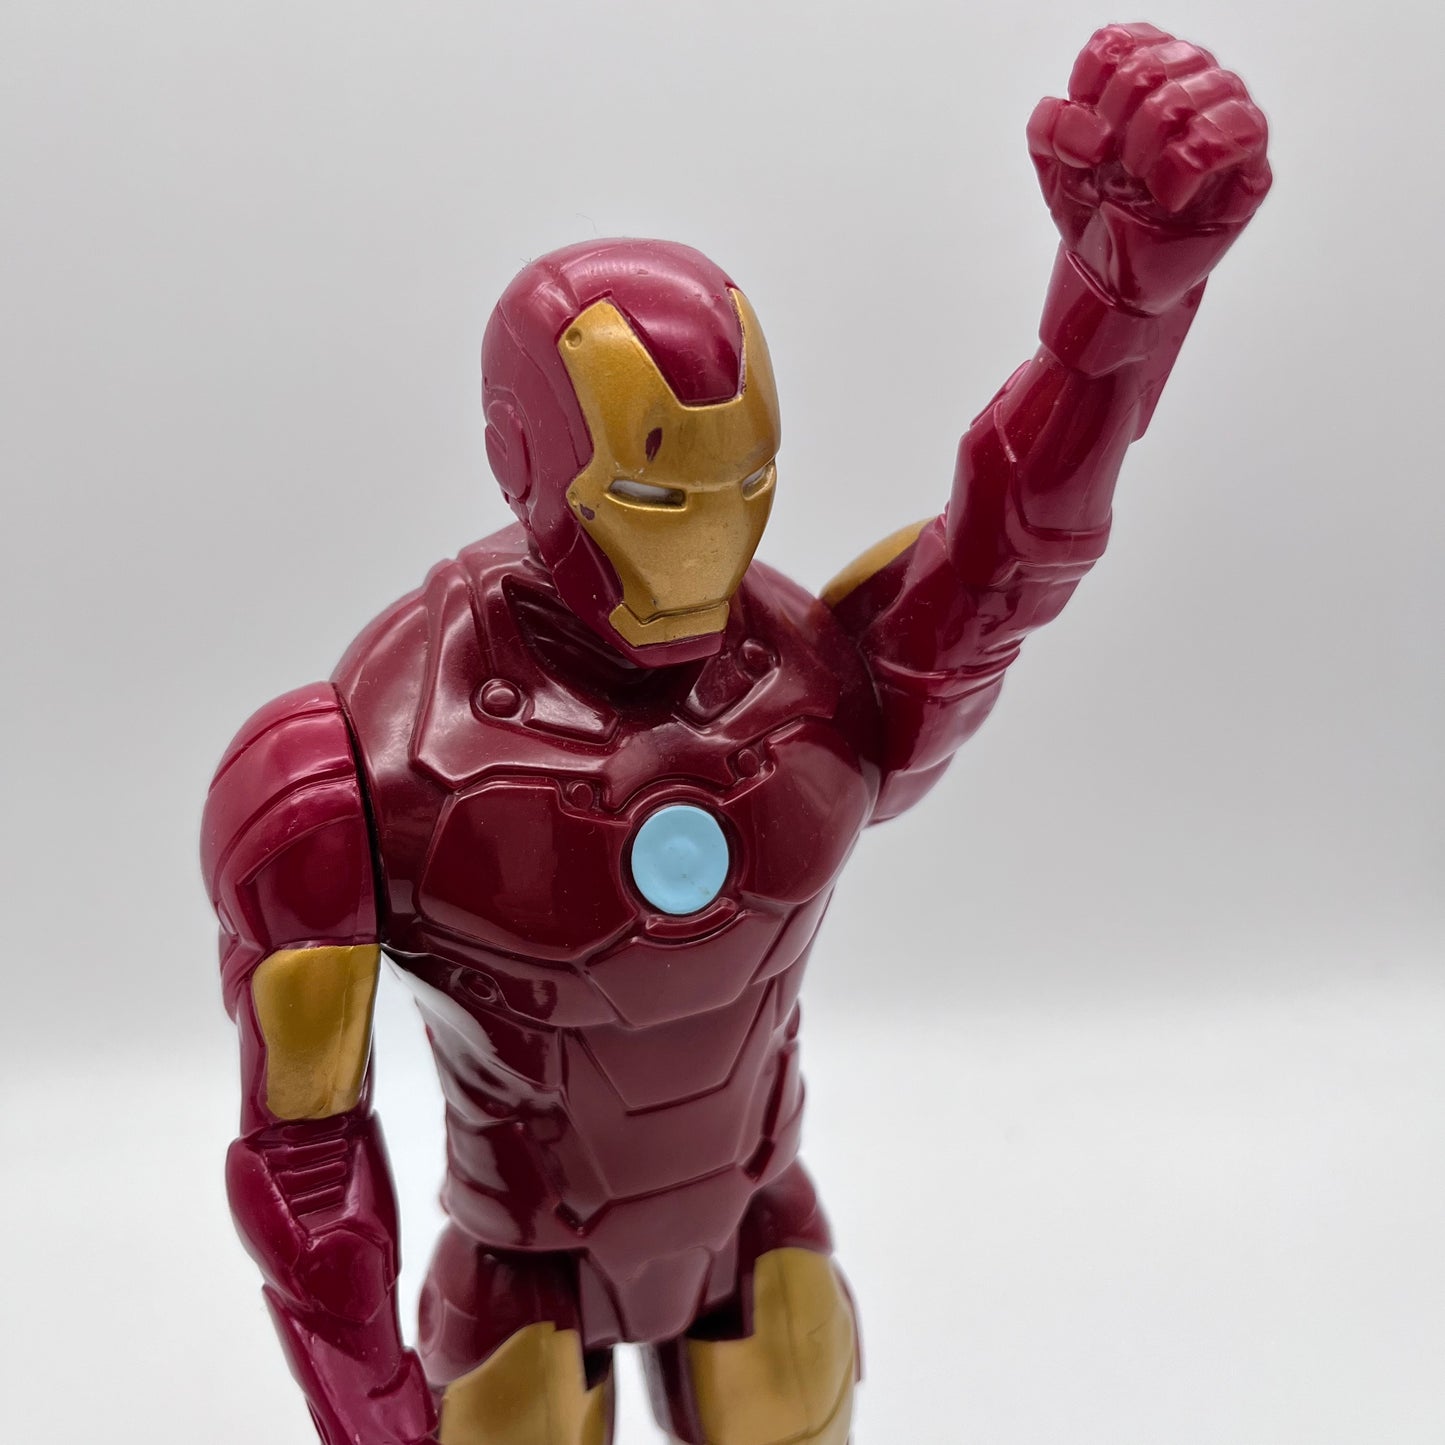 Iron Man Action Figure 12”